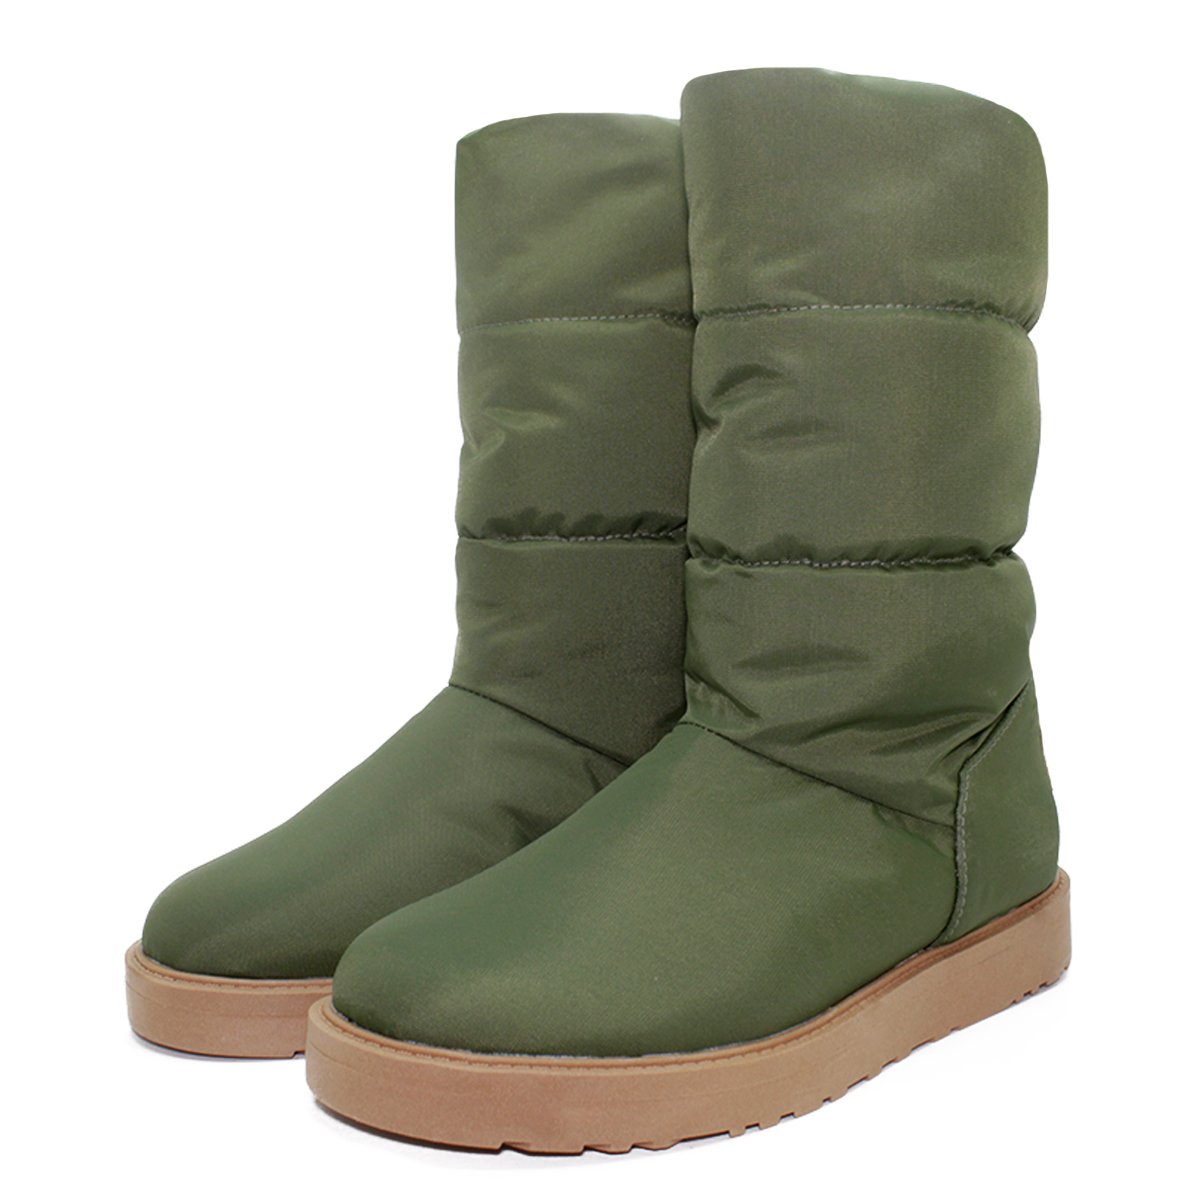 bota-barth-shoes-snow-verde-cano-alto-1